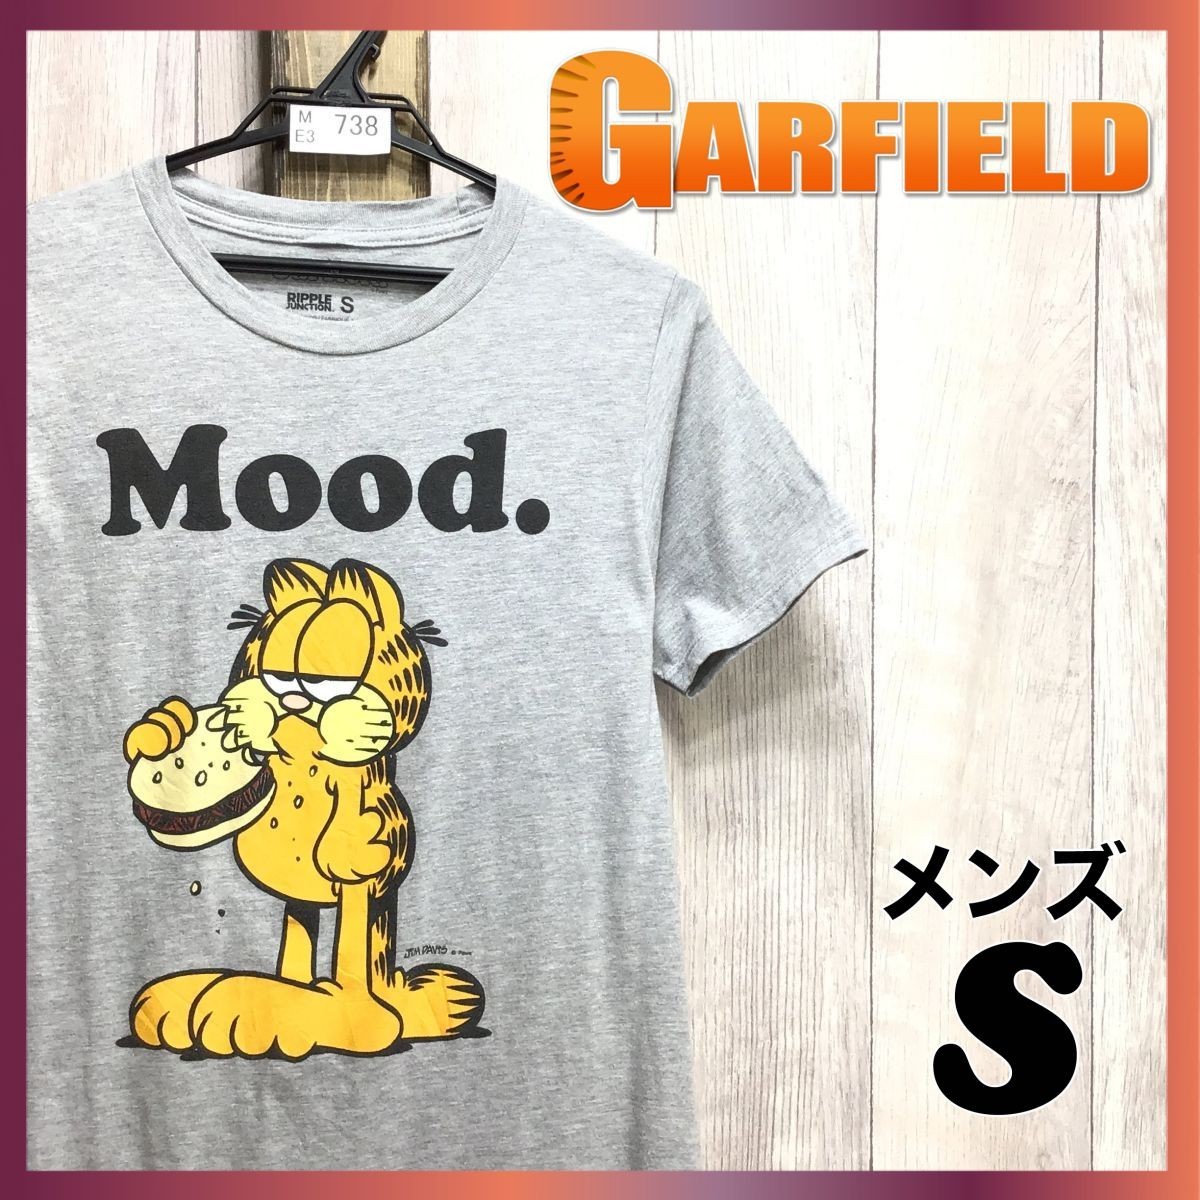 ヤフオク! -garfield tシャツ(Tシャツ)の中古品・新品・古着一覧